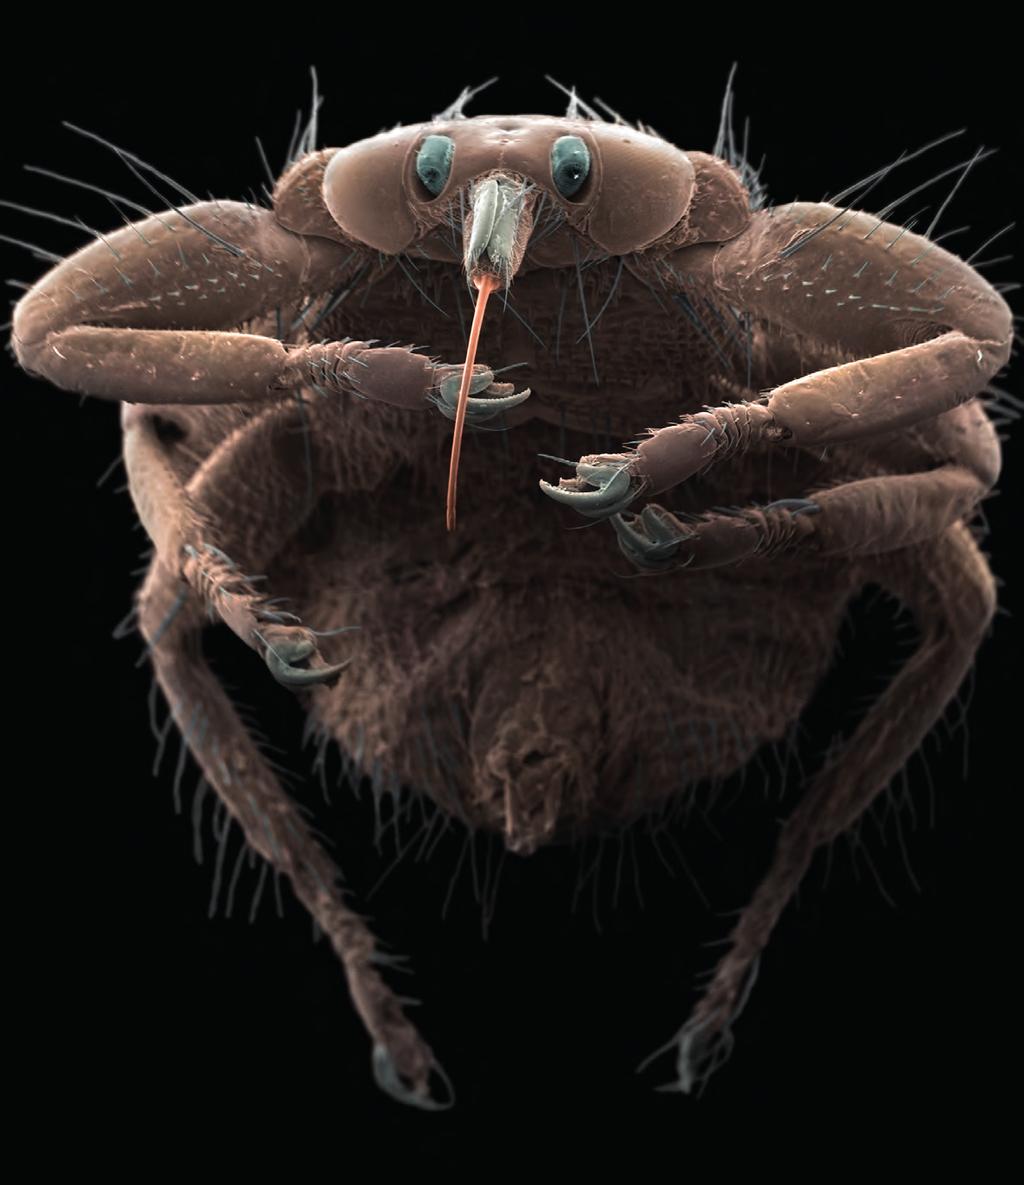 Foto: Jannicke Wiik-Nielsen Hjortelusflua en blodsuger som brer om seg Fargelagt elektronmikroskopibilde av hjortelusflue (Lipoptena cervi).